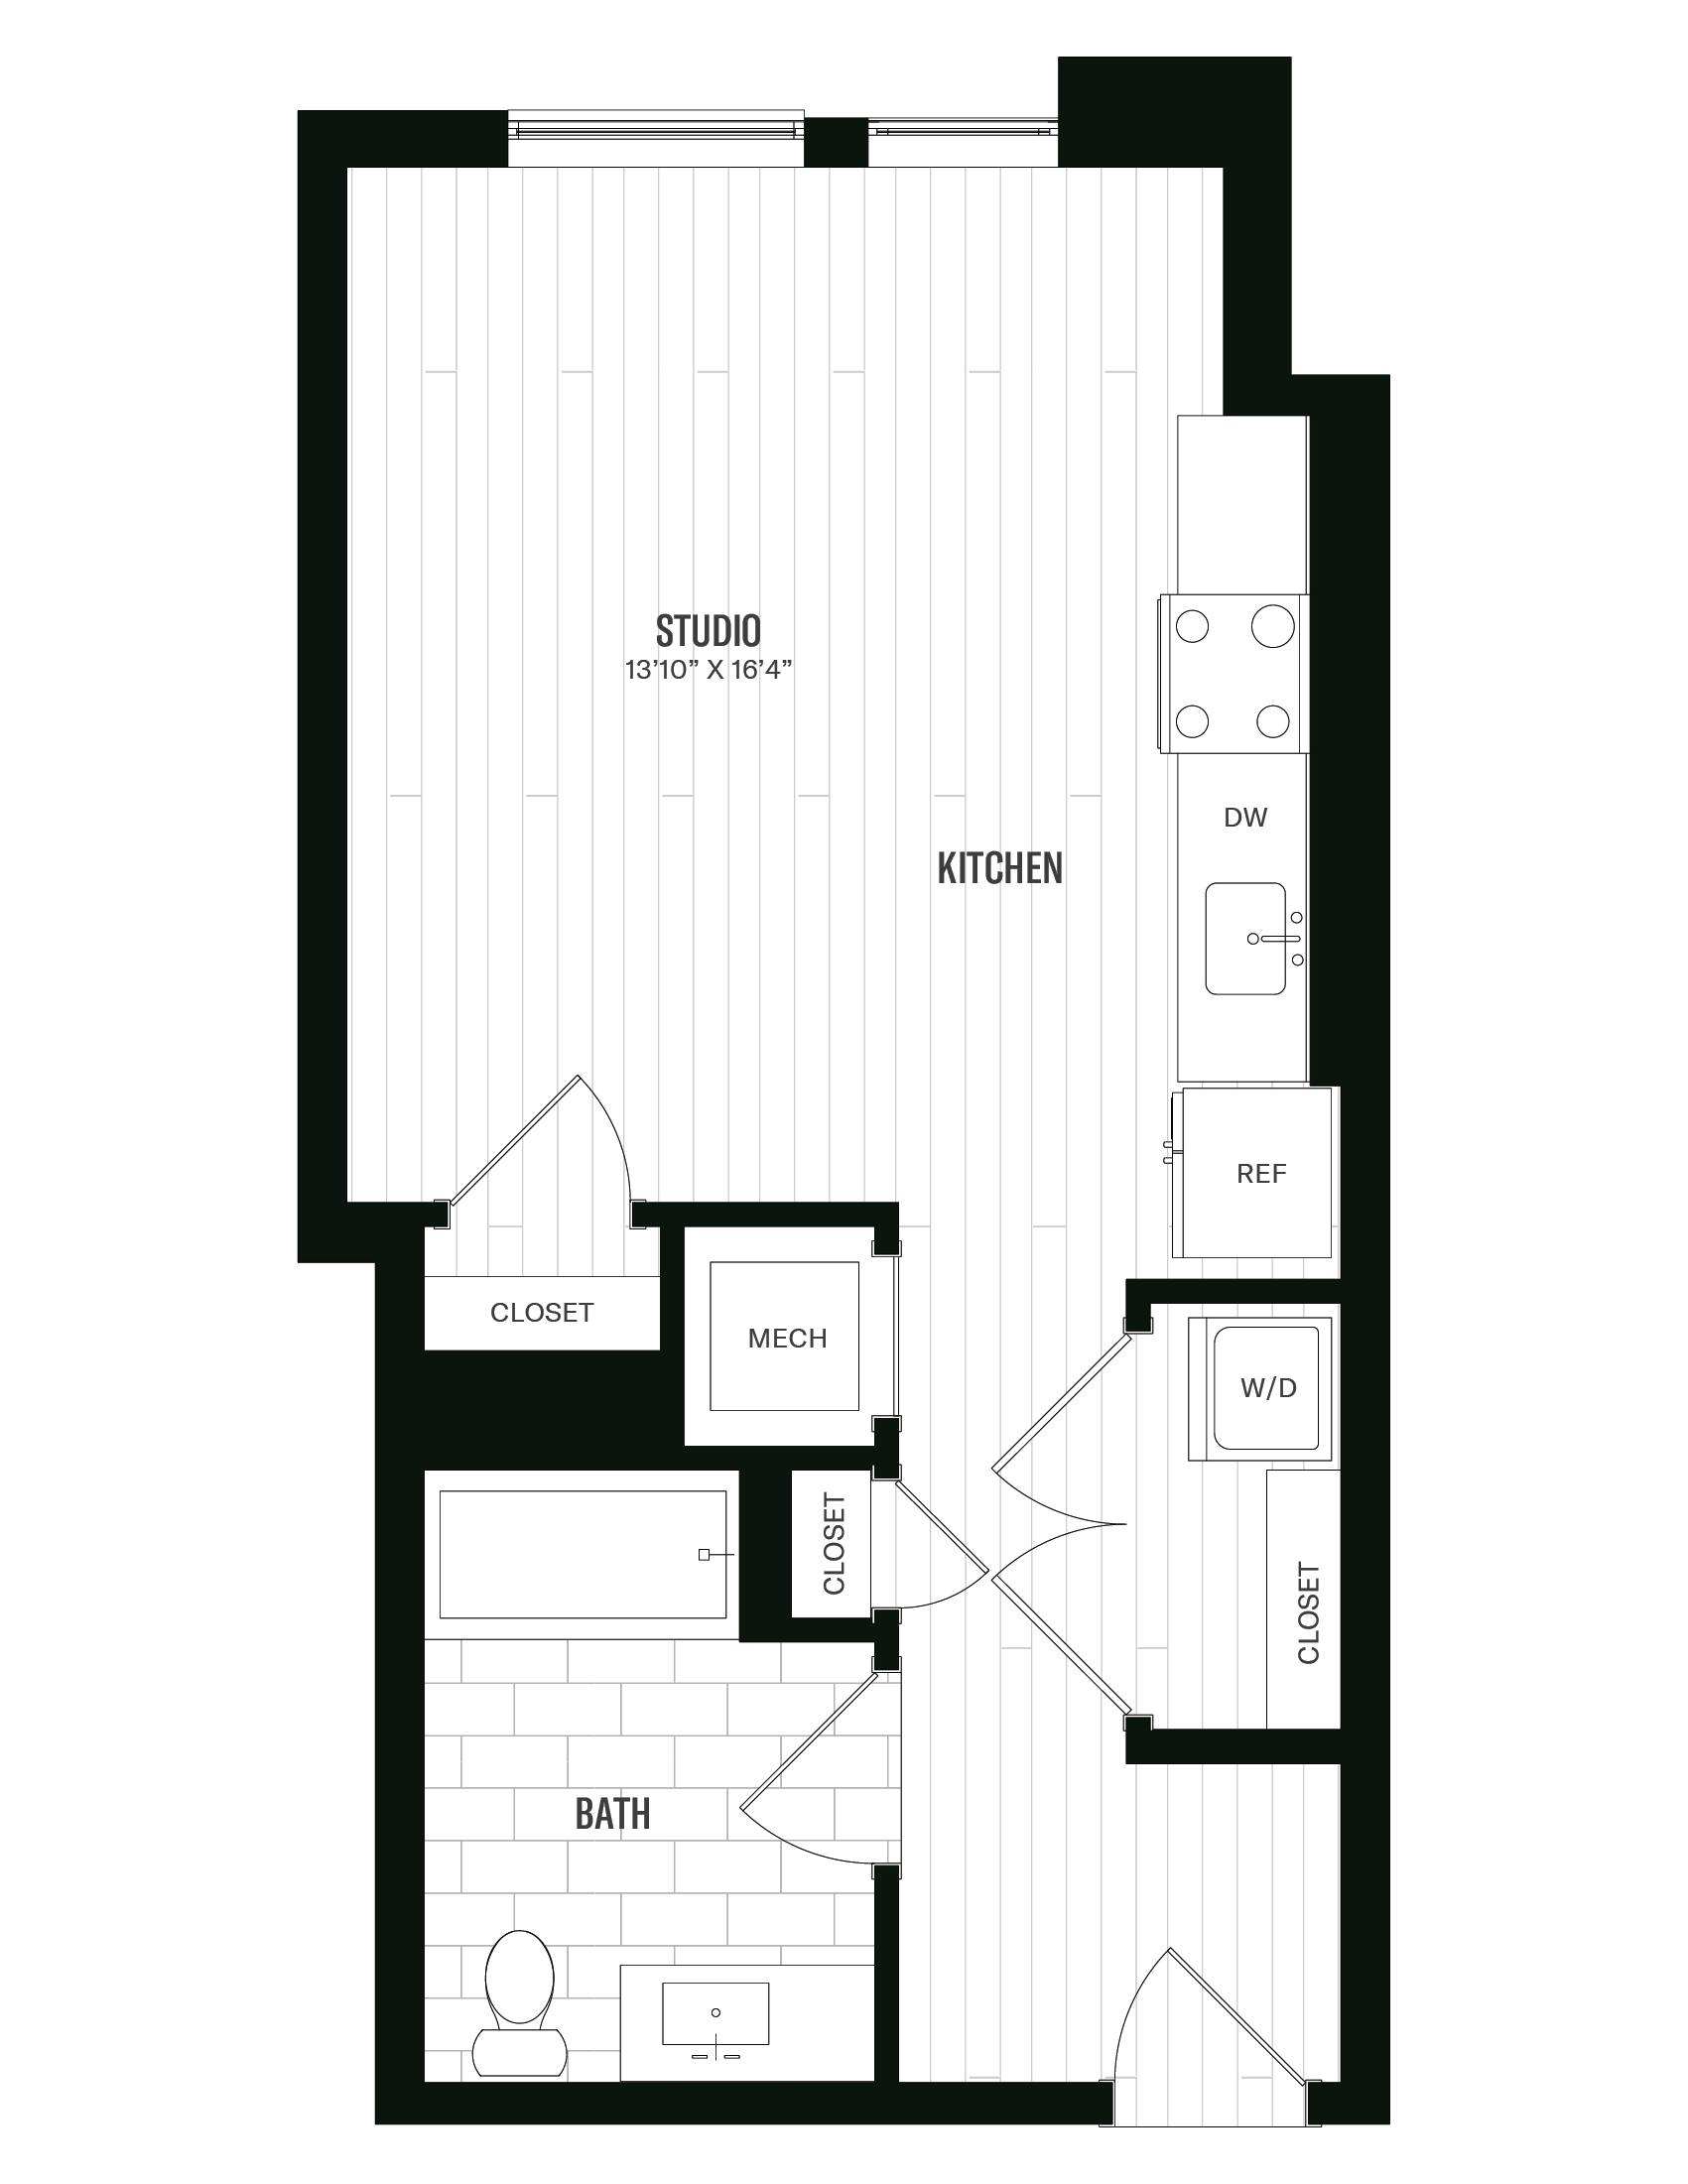 Floorplan image of unit 656